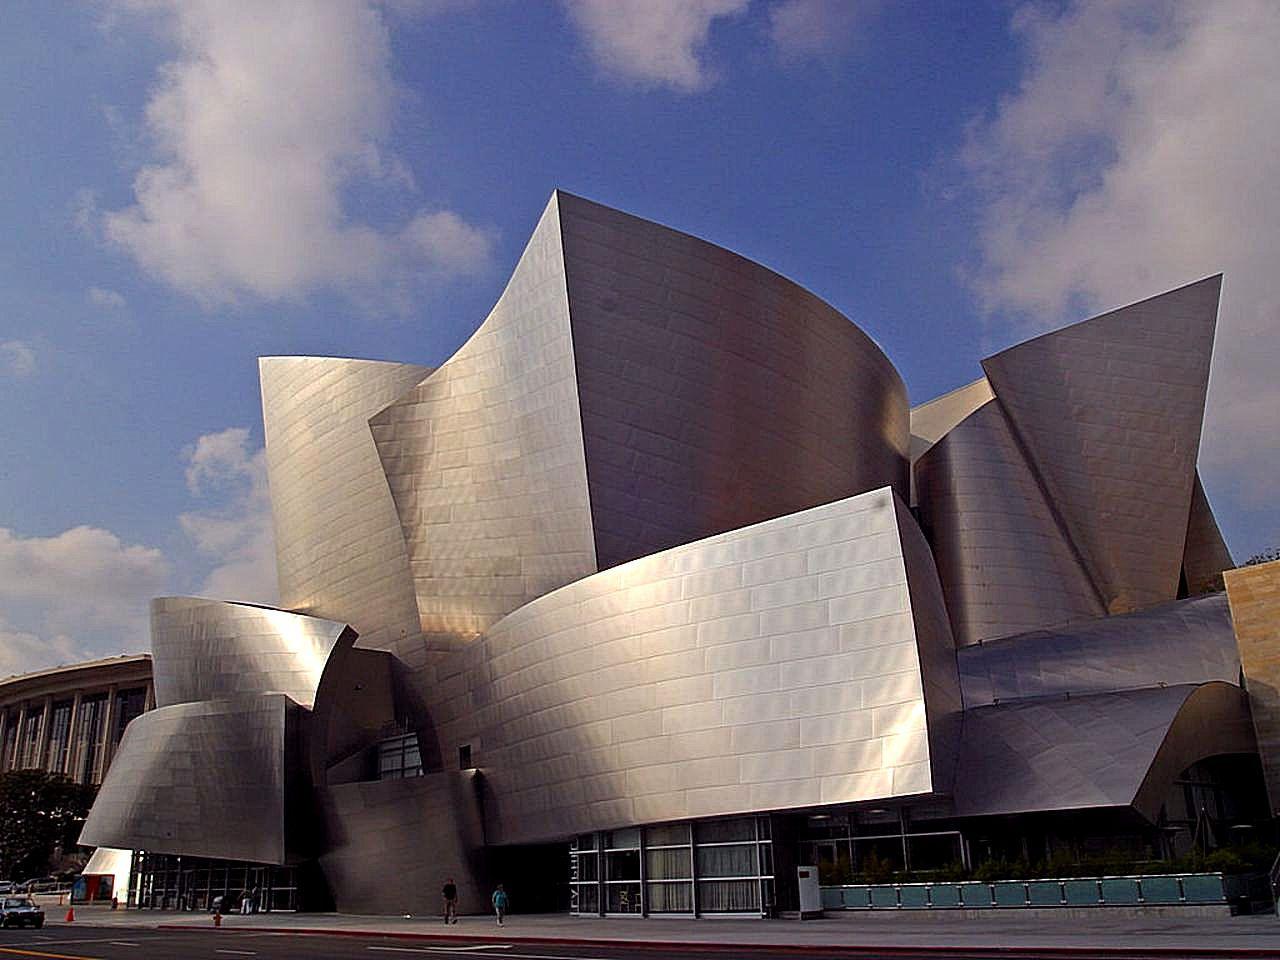 Walt Disney concert hall in Los